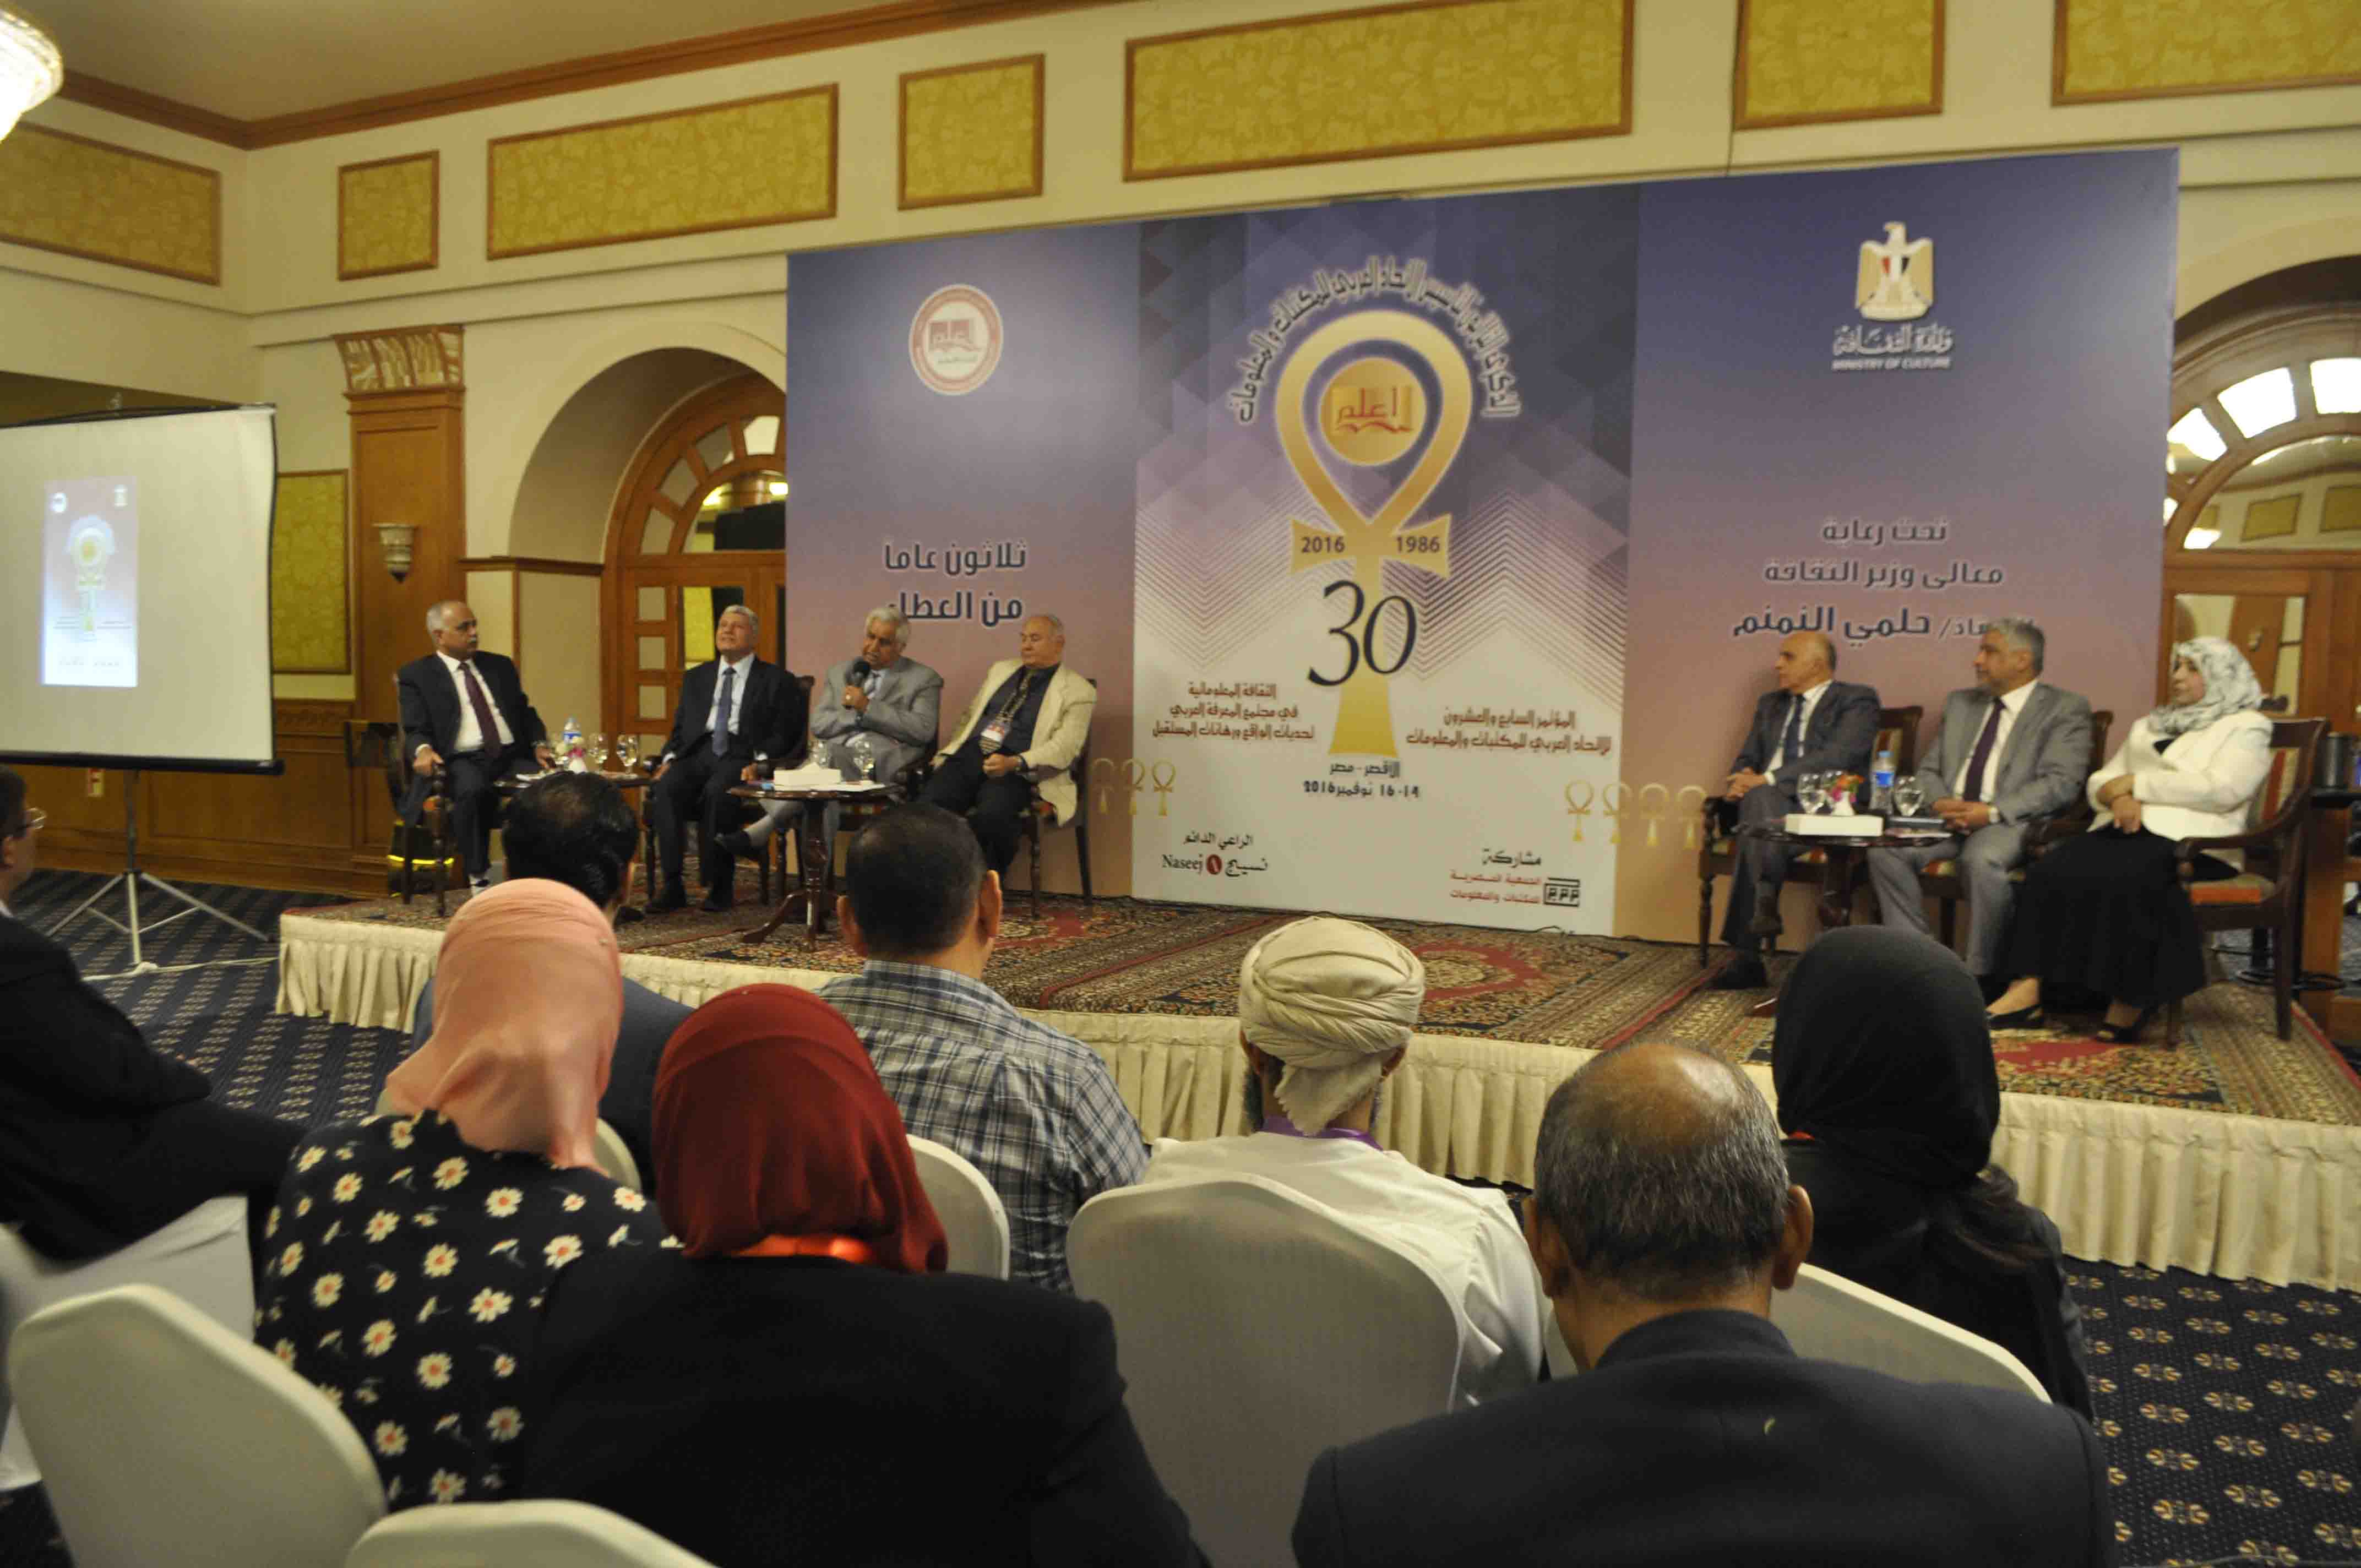 إفتتاح فعاليات المؤتمر السابع والعشرين للاتحاد العربي للمكتبات والمعلومات بالأقصر